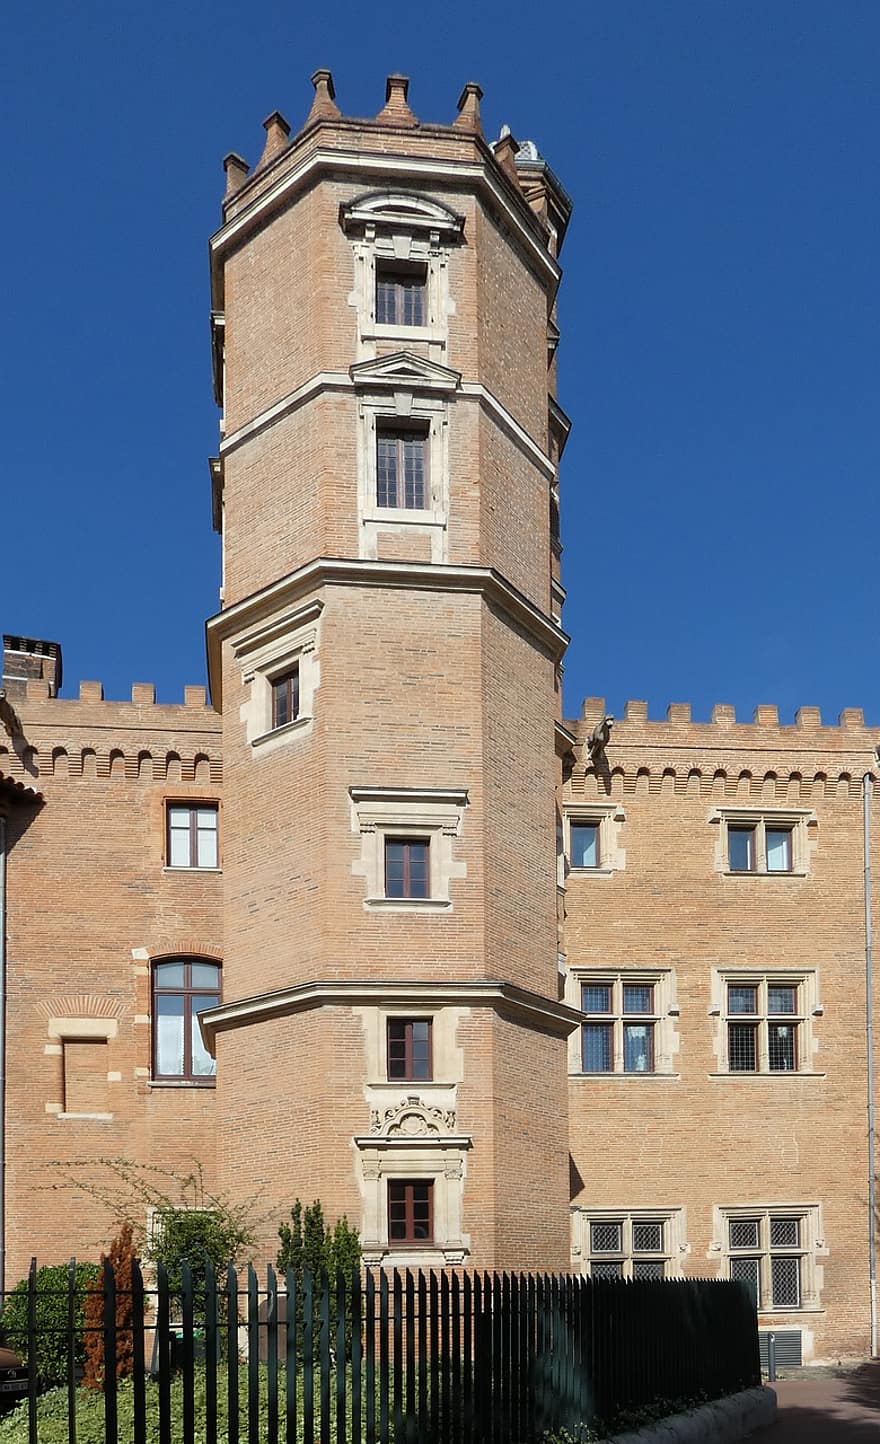 πύργος, αρχιτεκτονική, μνημείο, ιστορικός, 1400s, occitania